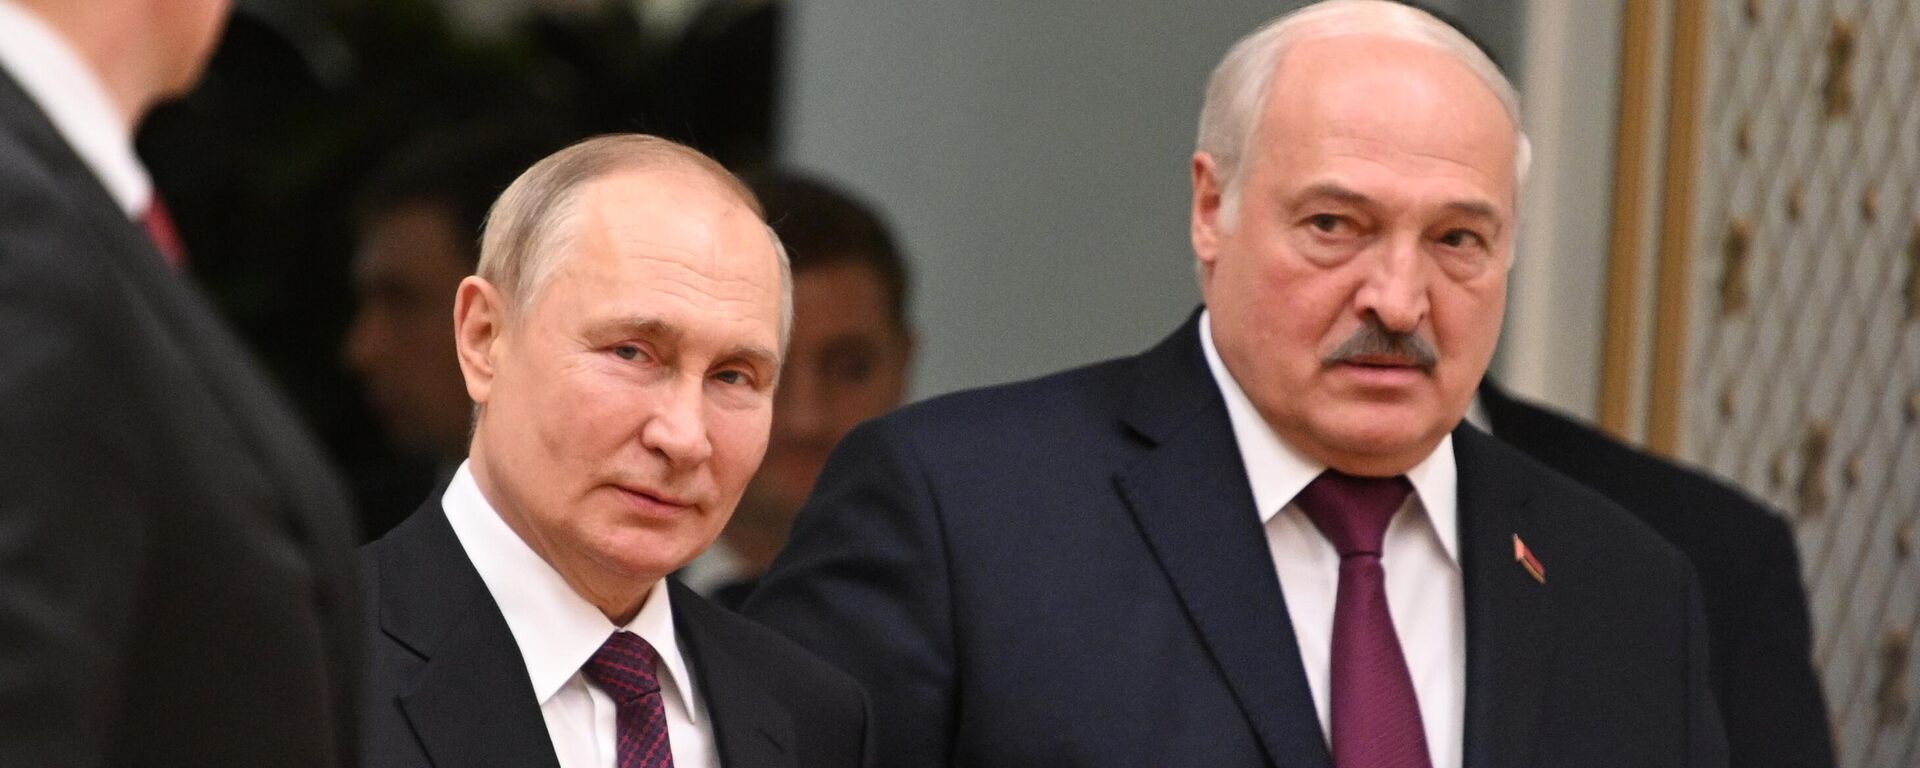 El presidente ruso, Vladímir Putin, y el presidente bielorruso Alexander Lukashenko antes de las conversaciones en Minsk, 19 de diciembre.  - Sputnik Mundo, 1920, 19.12.2022